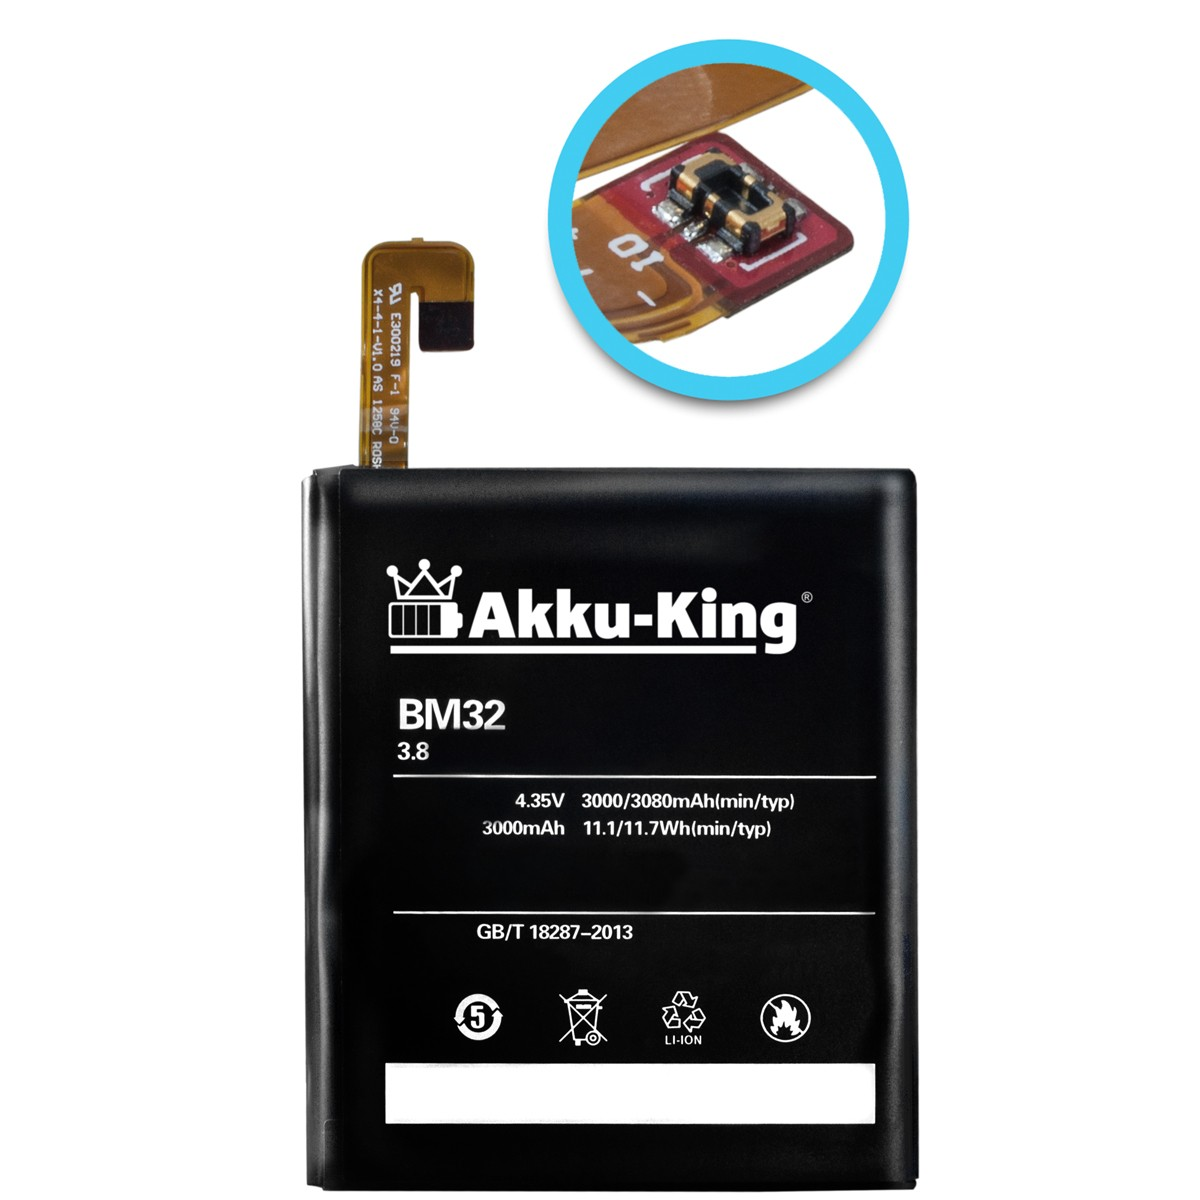 kompatibel Handy-Akku, 3.8 BM32 Li-Polymer Xiaomi AKKU-KING Volt, Akku mit 3000mAh